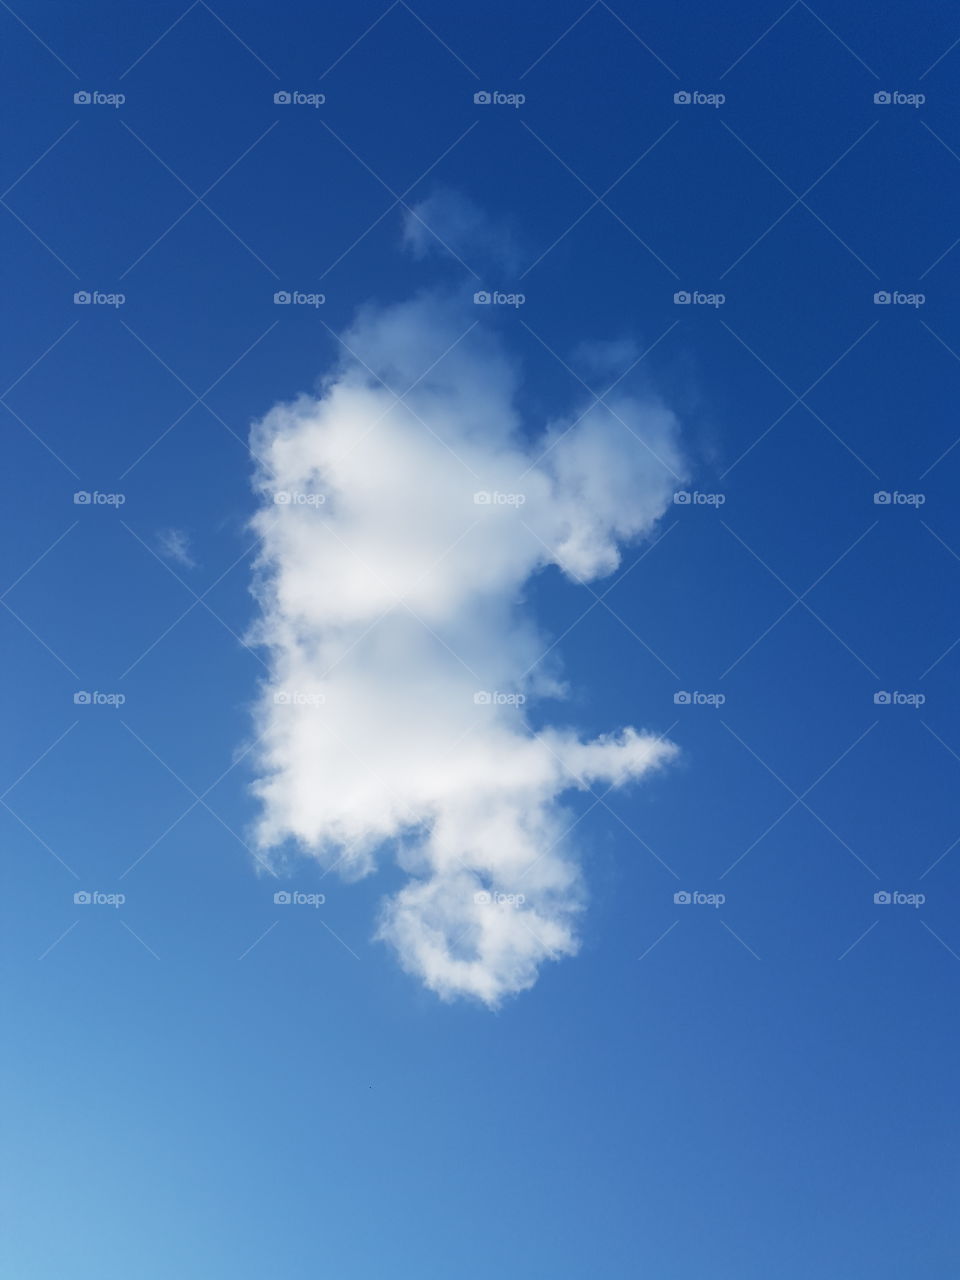 cloud shapes